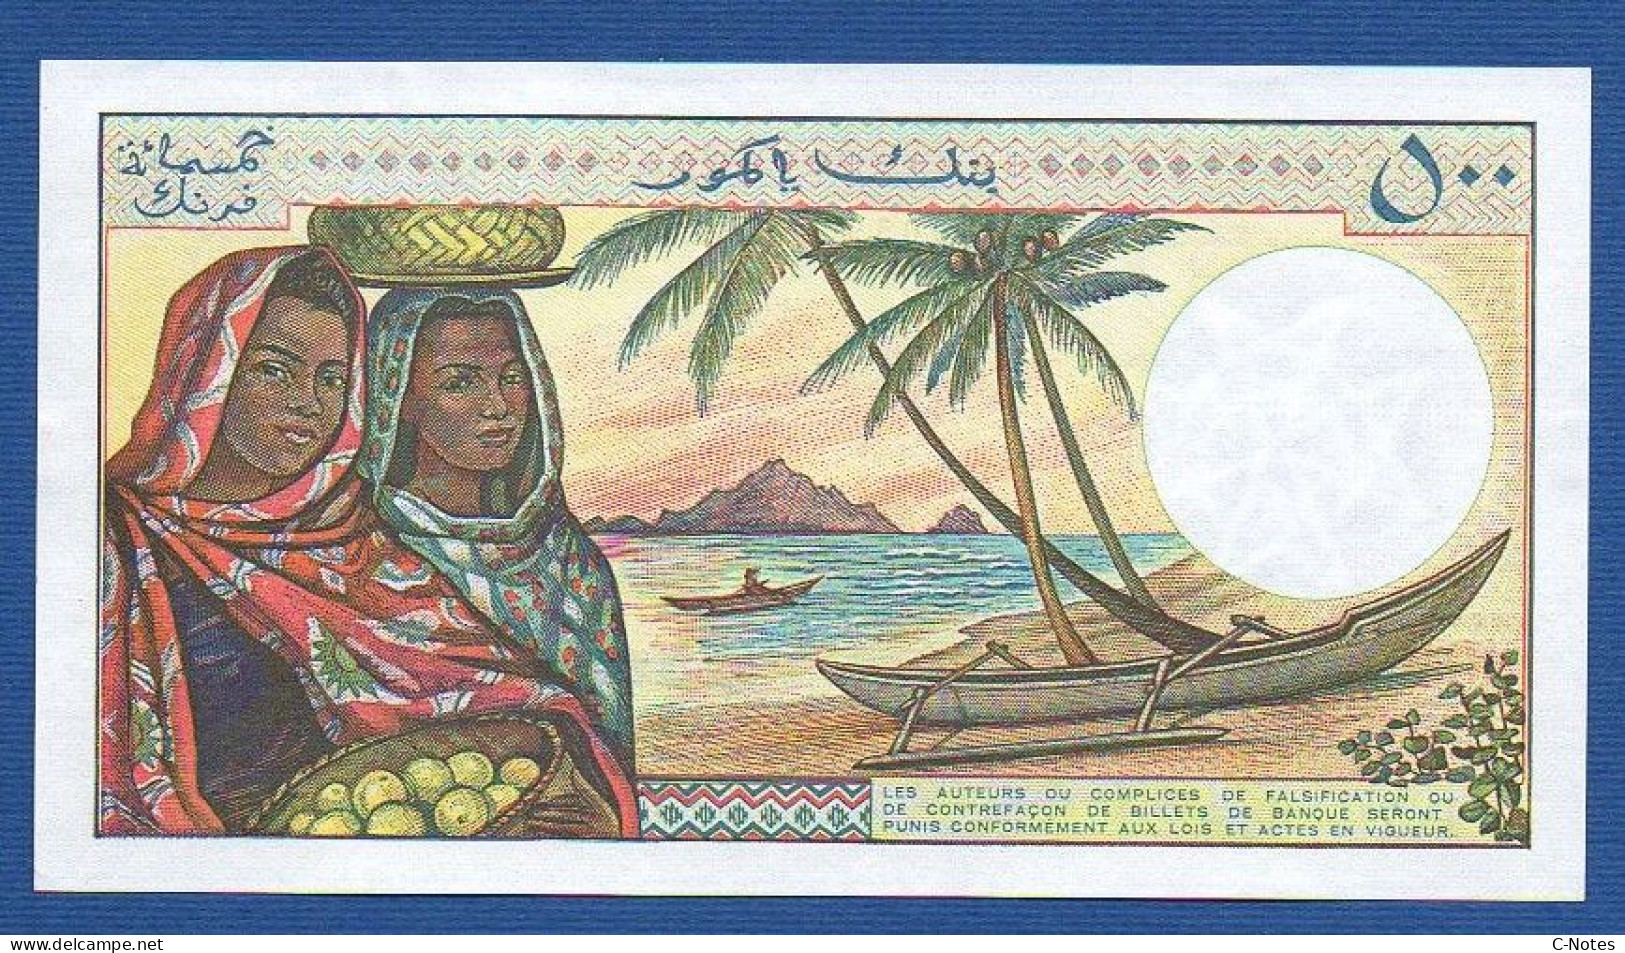 COMOROS - P.10a2 – 500 Francs ND (1984 - 2004) UNC, S/n P.2 74378 - Comoros